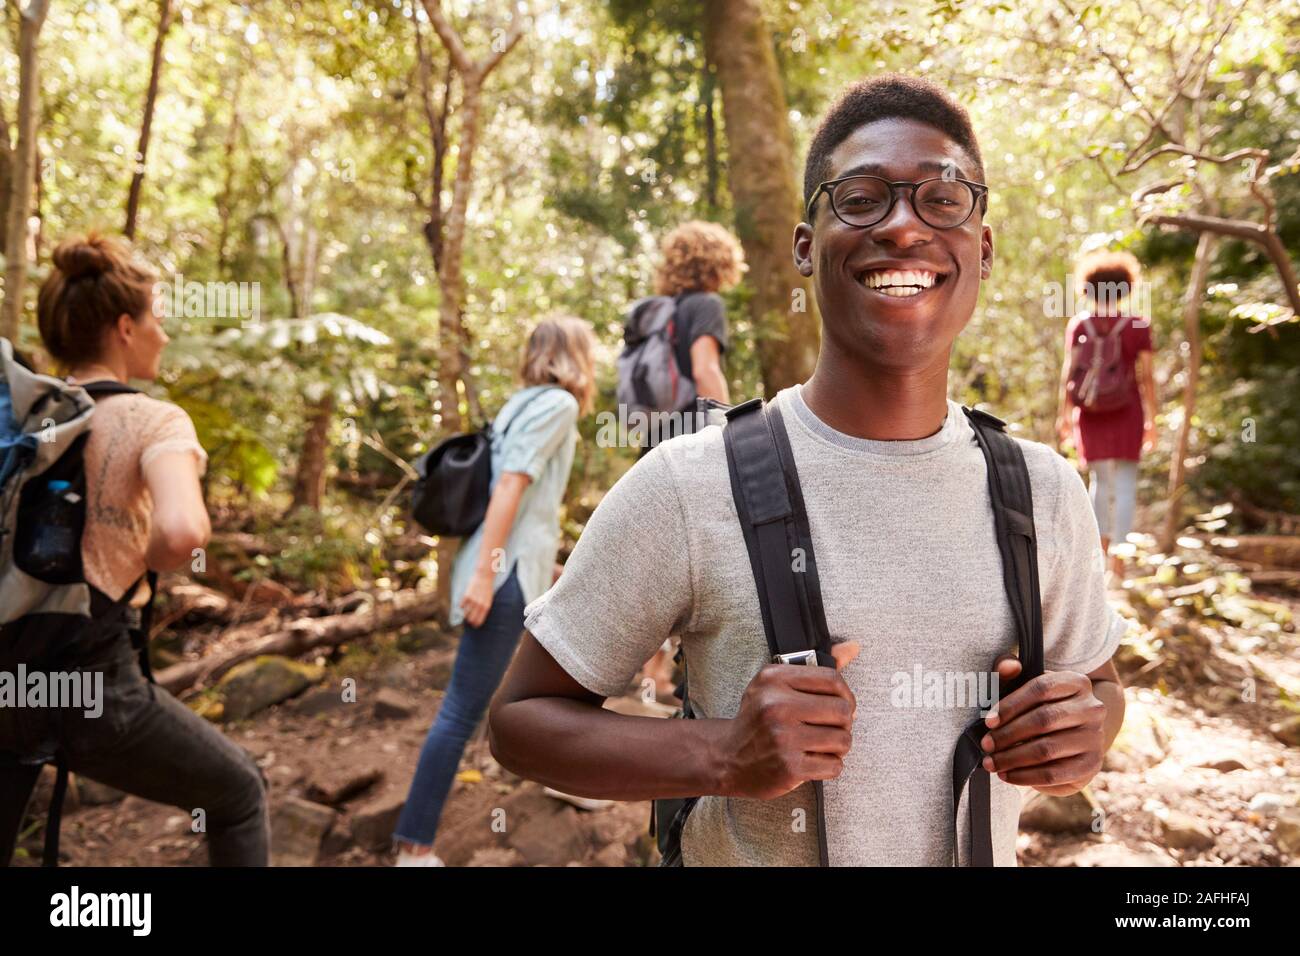 Waist up portrait of smiling African American man millénaire de la randonnée dans une forêt avec des amis, Close up Banque D'Images